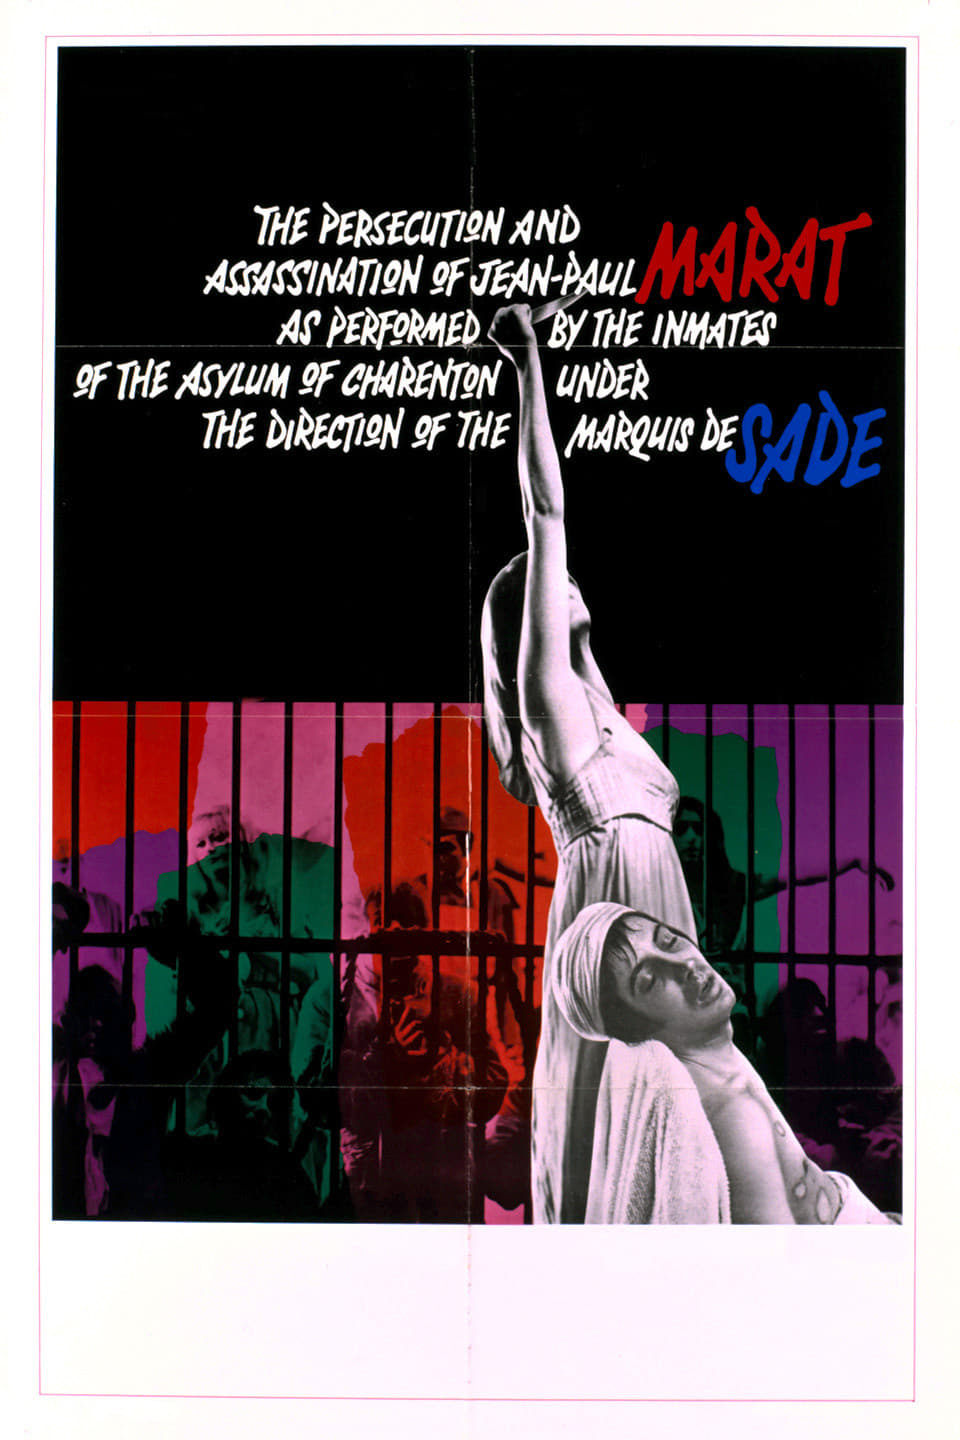 マルキ・ド・サドの演出のもとにシャラントン精神病院患者たちによって演じられたジャン＝ポール・マラーの迫害と暗殺の画像